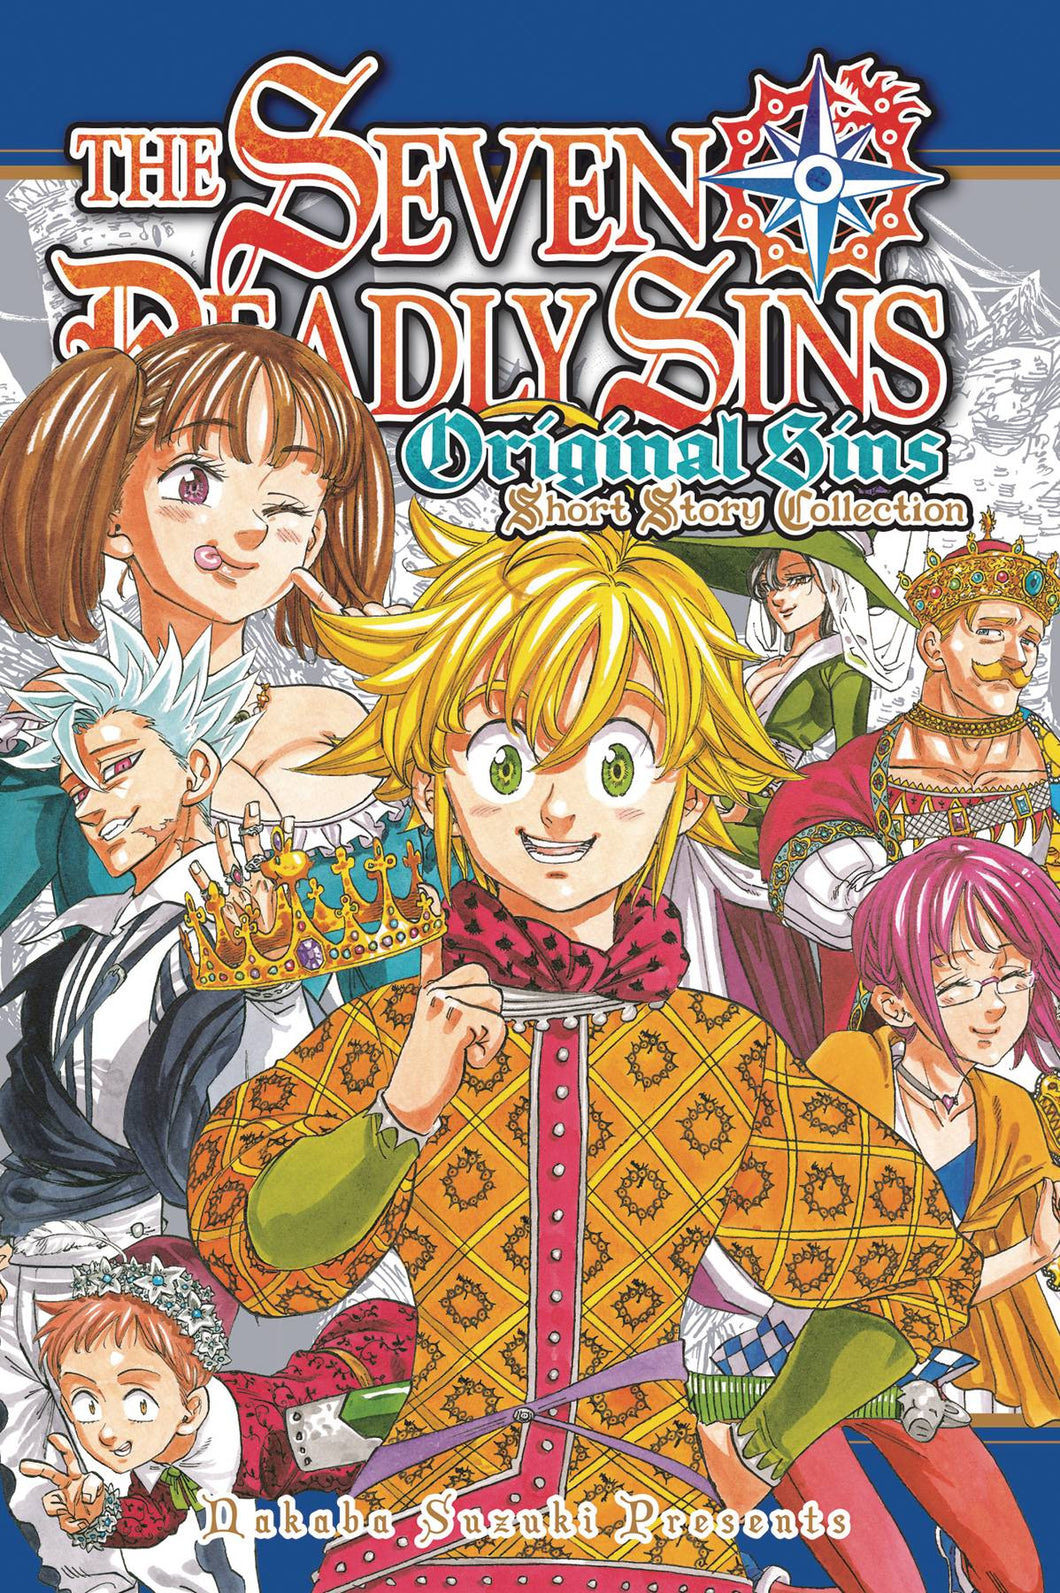 Seven Deadly Sins Original Short Story Coll GN - Books